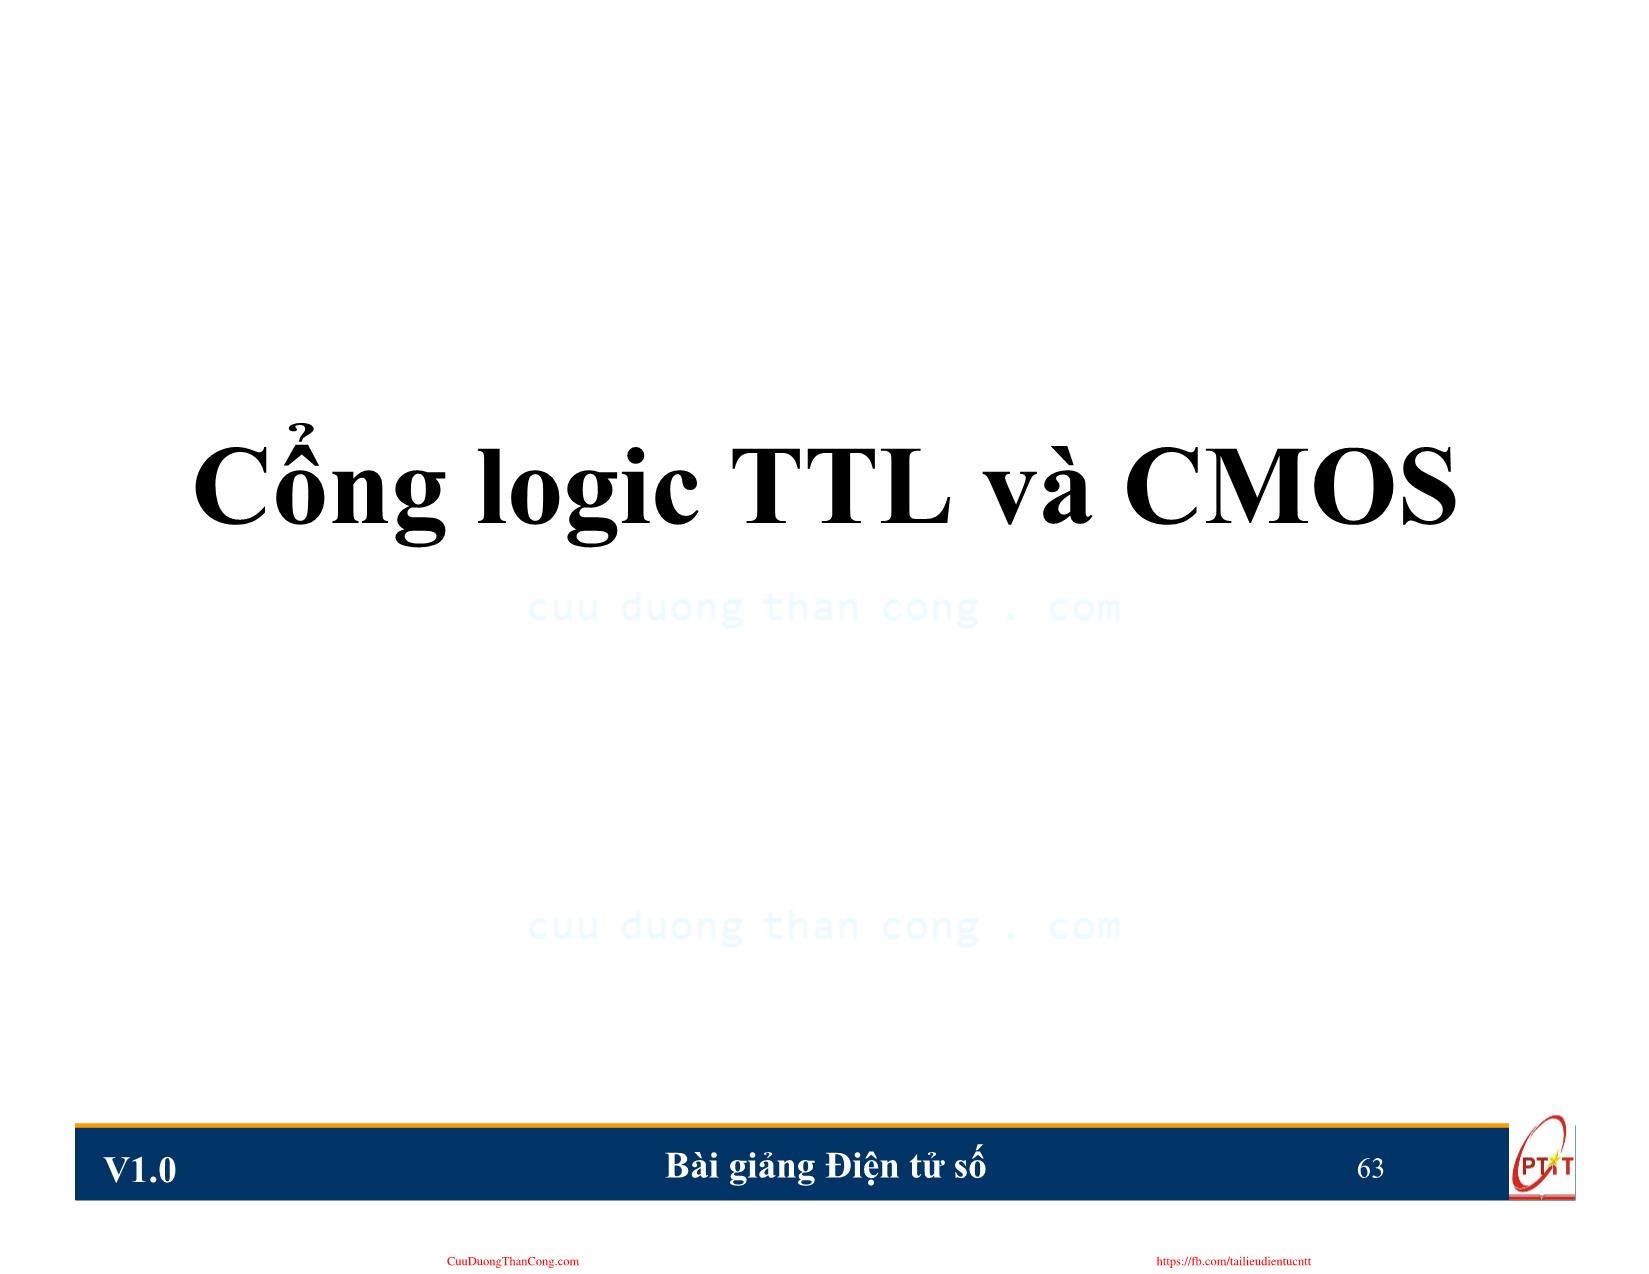 Bài giảng Điện tử số - Chương 3: Cổng logic TTL và CMOS - Nguyễn Trung Hiếu trang 2